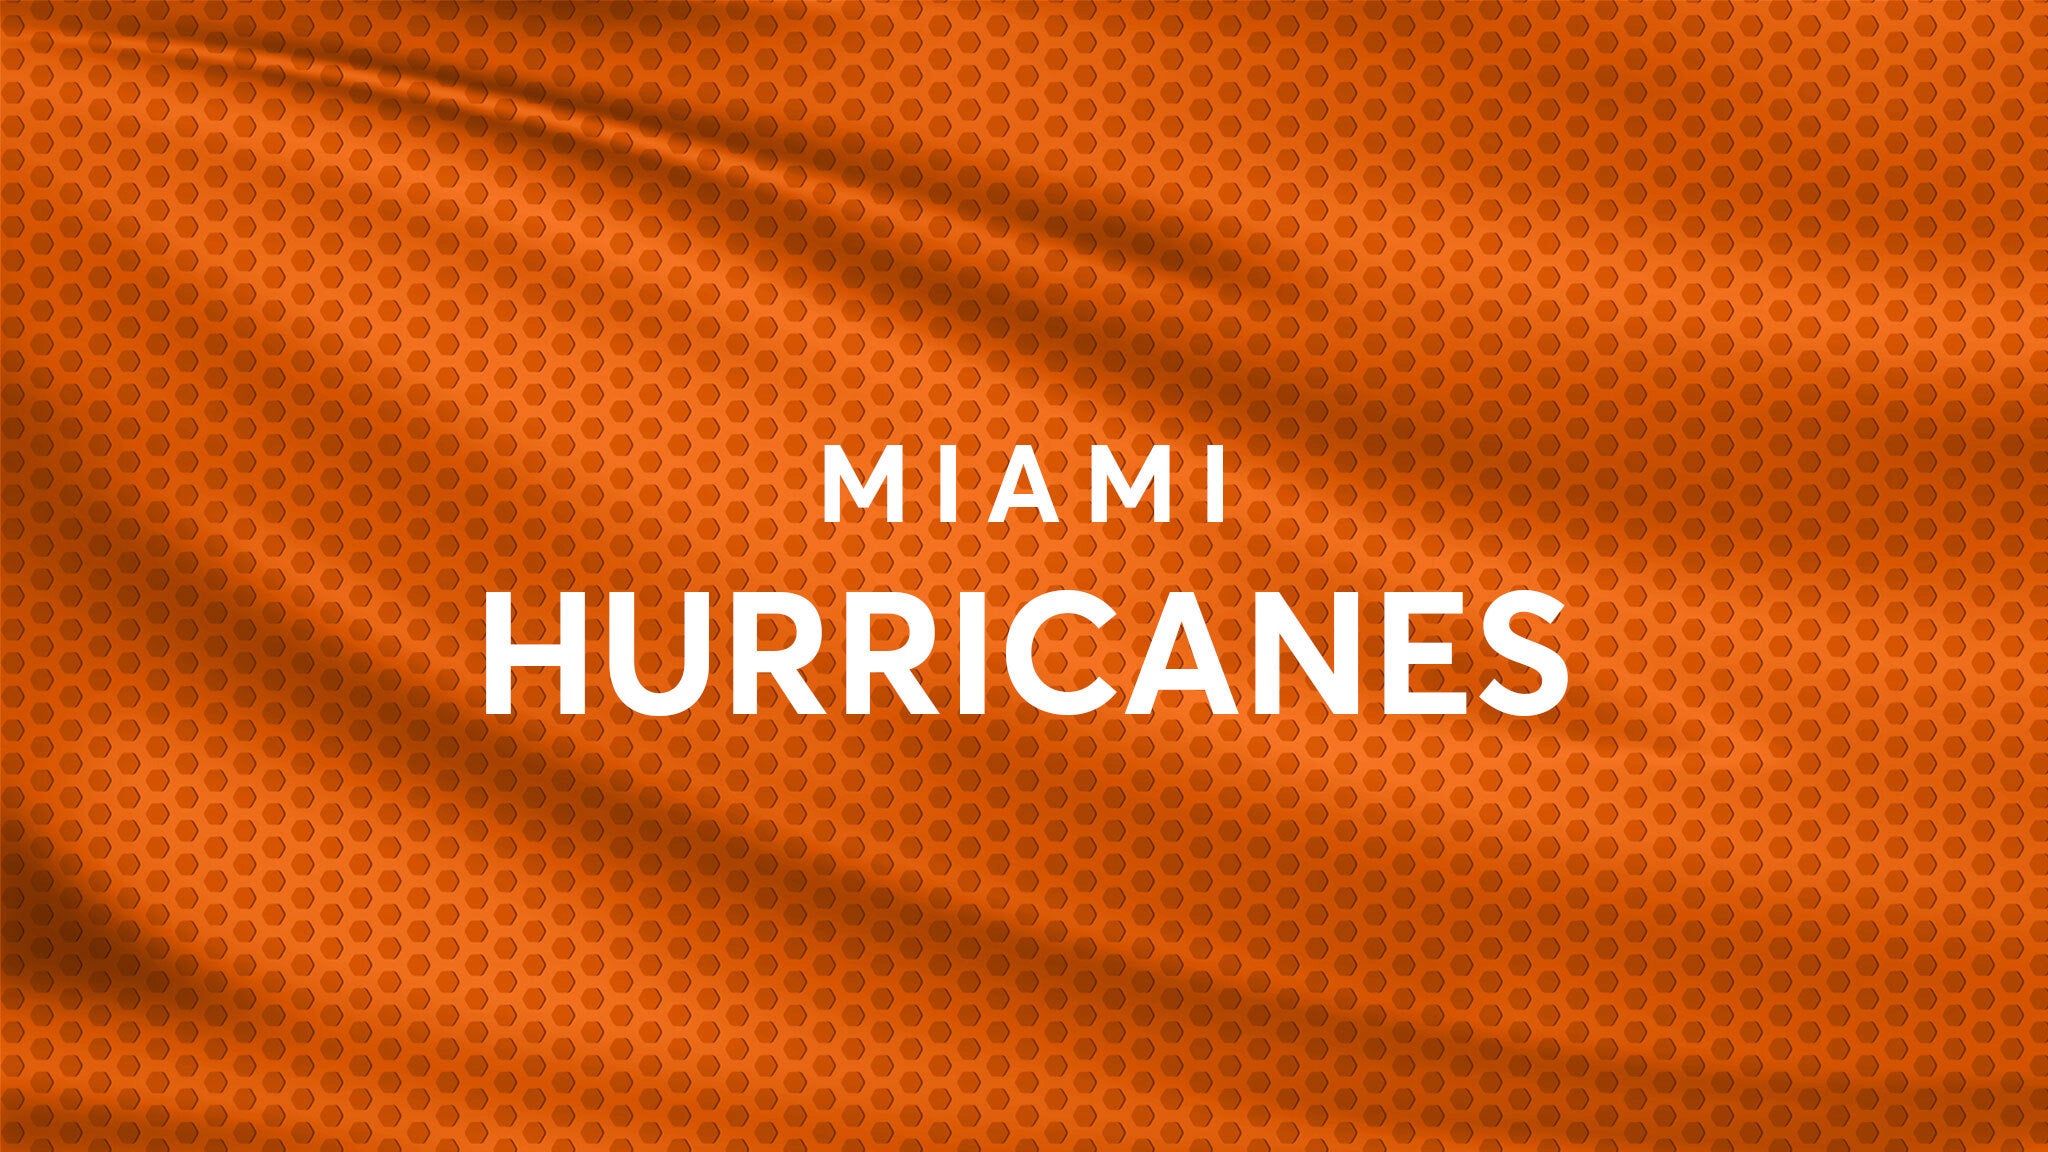 Miami Hurricanes Baseball vs. Florida Atlantic Owls Baseball